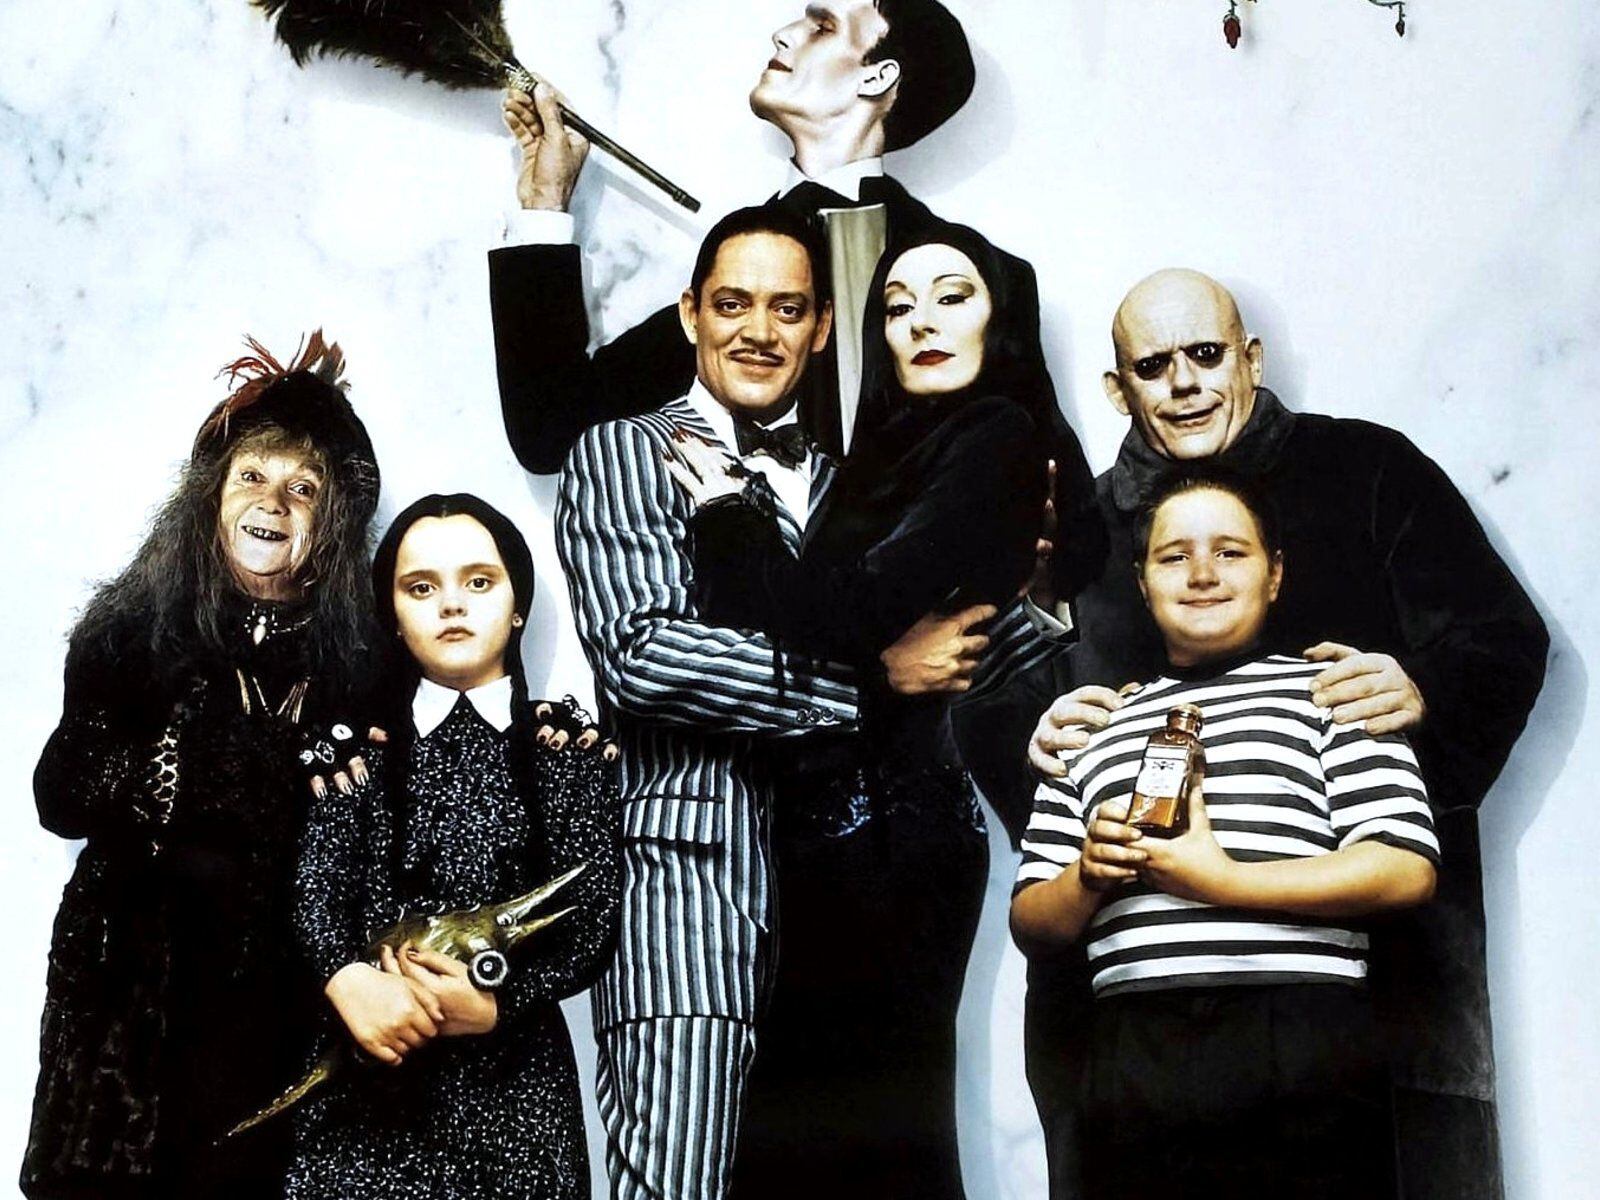 'Los locos Addams' es una película estadounidense de comedia de 1991. Su secuela con el mismo elenco se estrenó en 1993 y ambas están inspiradas en la serie homónima de 1964.